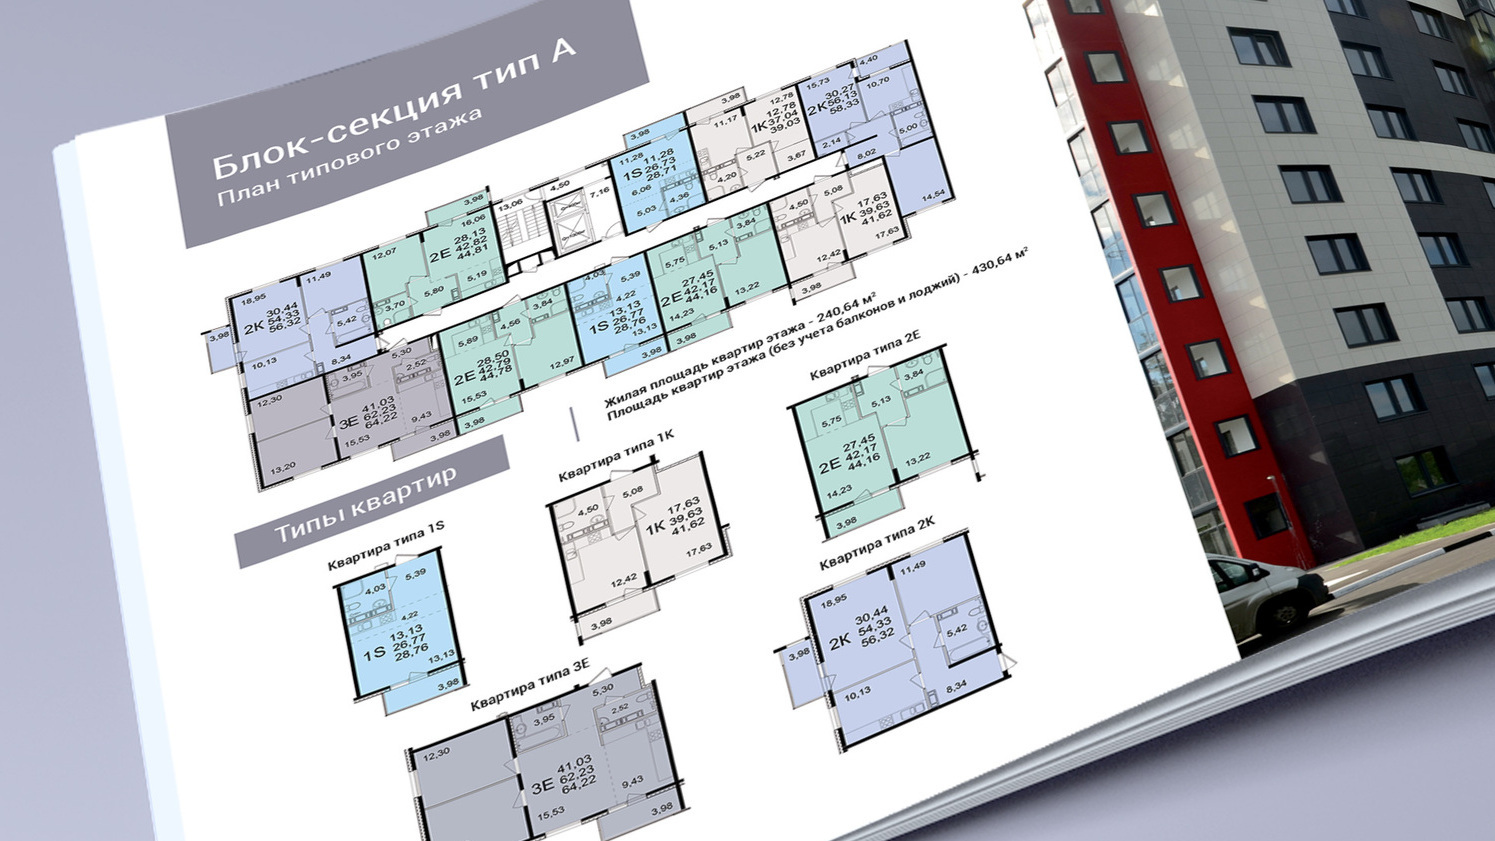 Фотография полосы брошюры ВДСК с планами-чертежами блок-секций многоэтажных домов